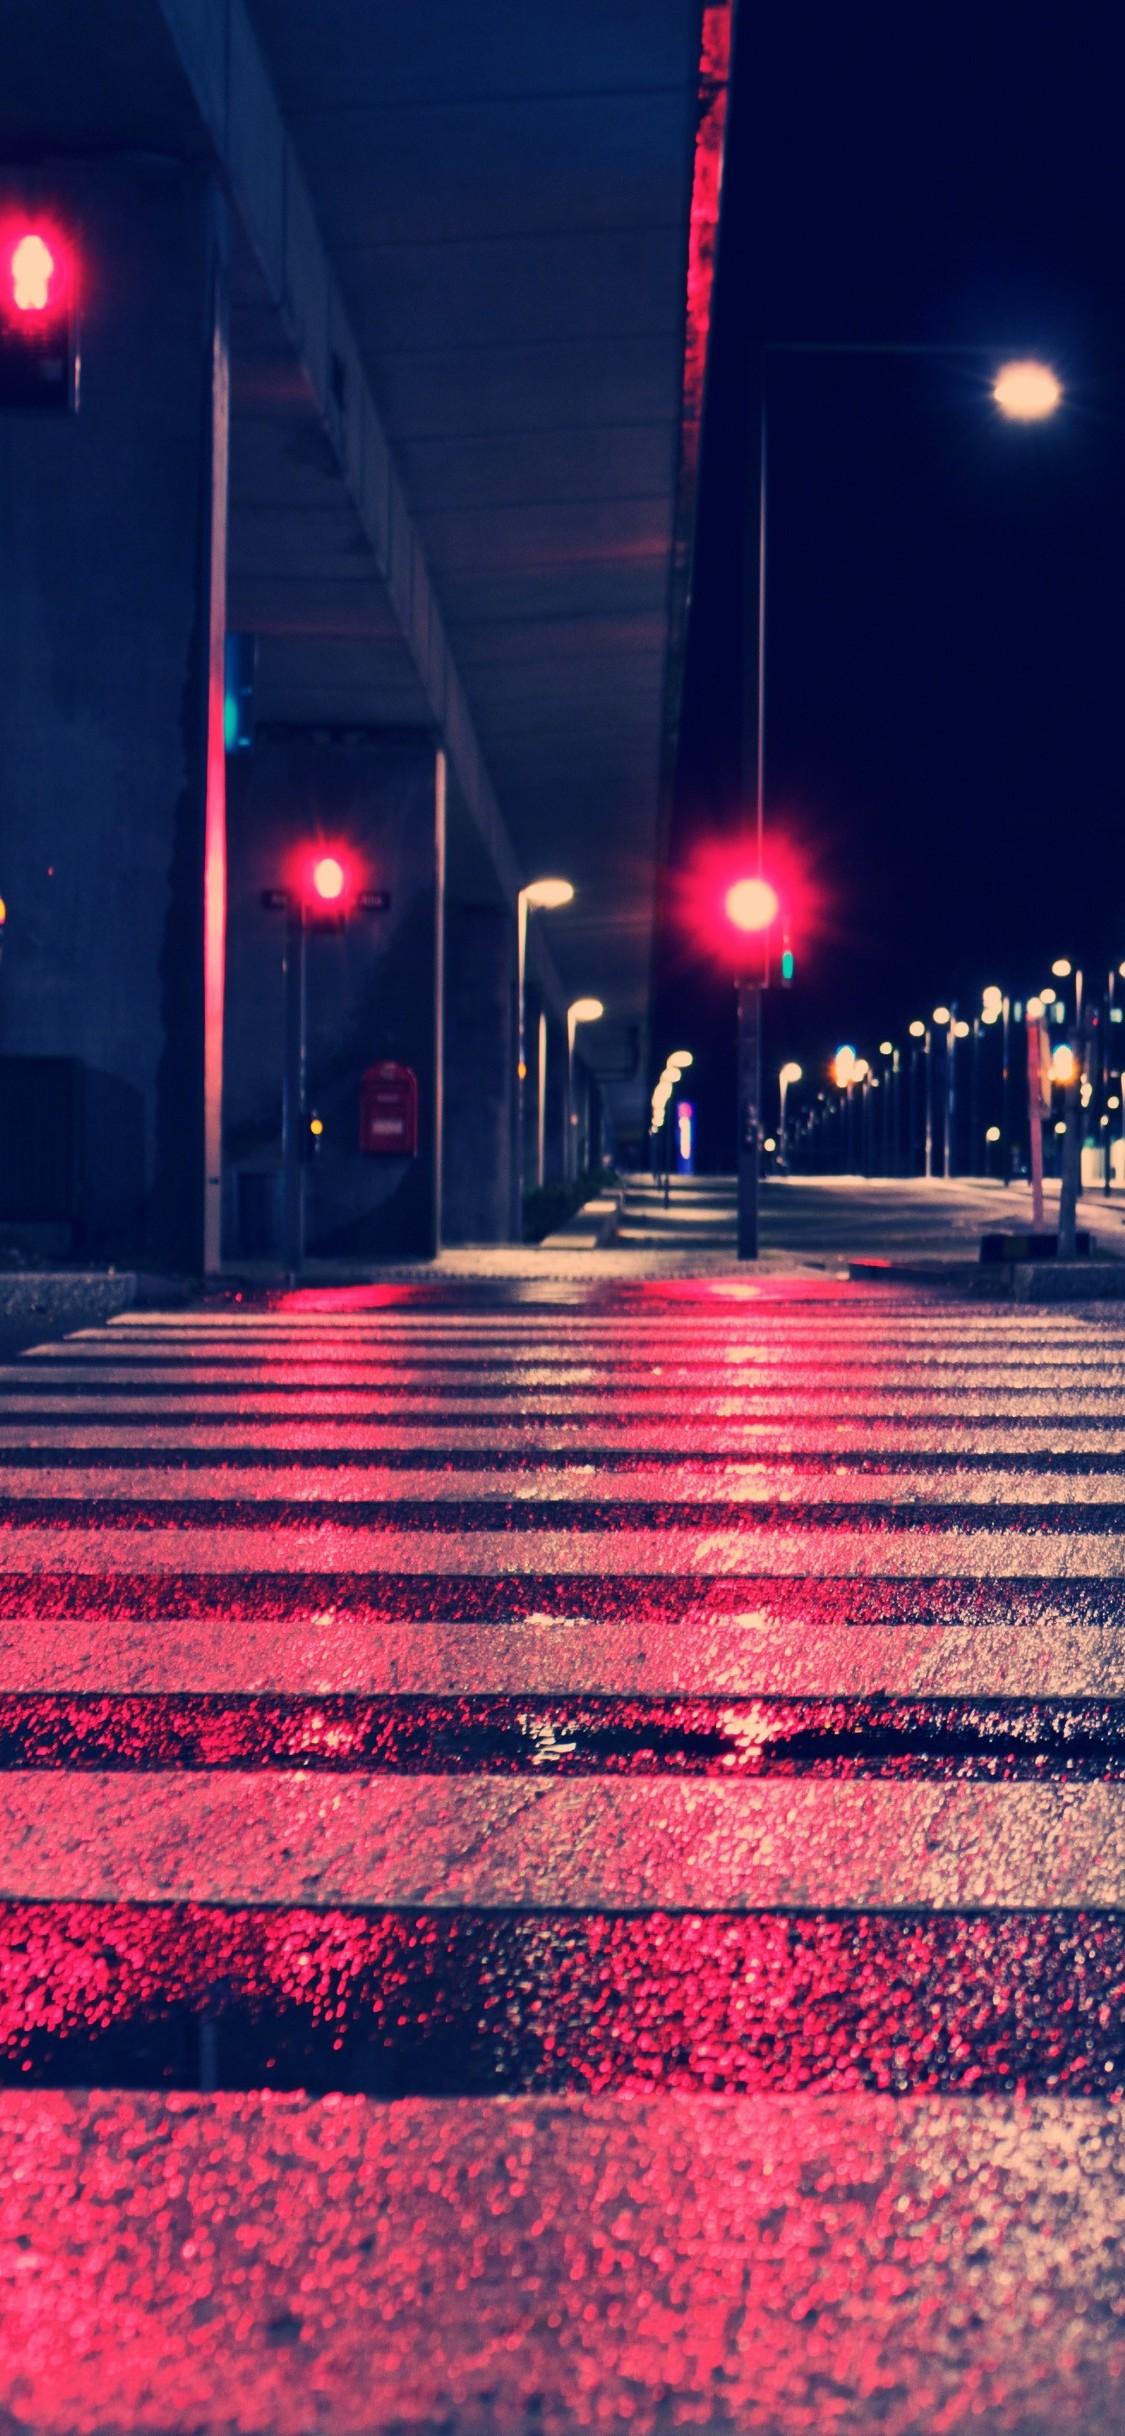 Night City Lights Street 4k iPhone XS, iPhone 10